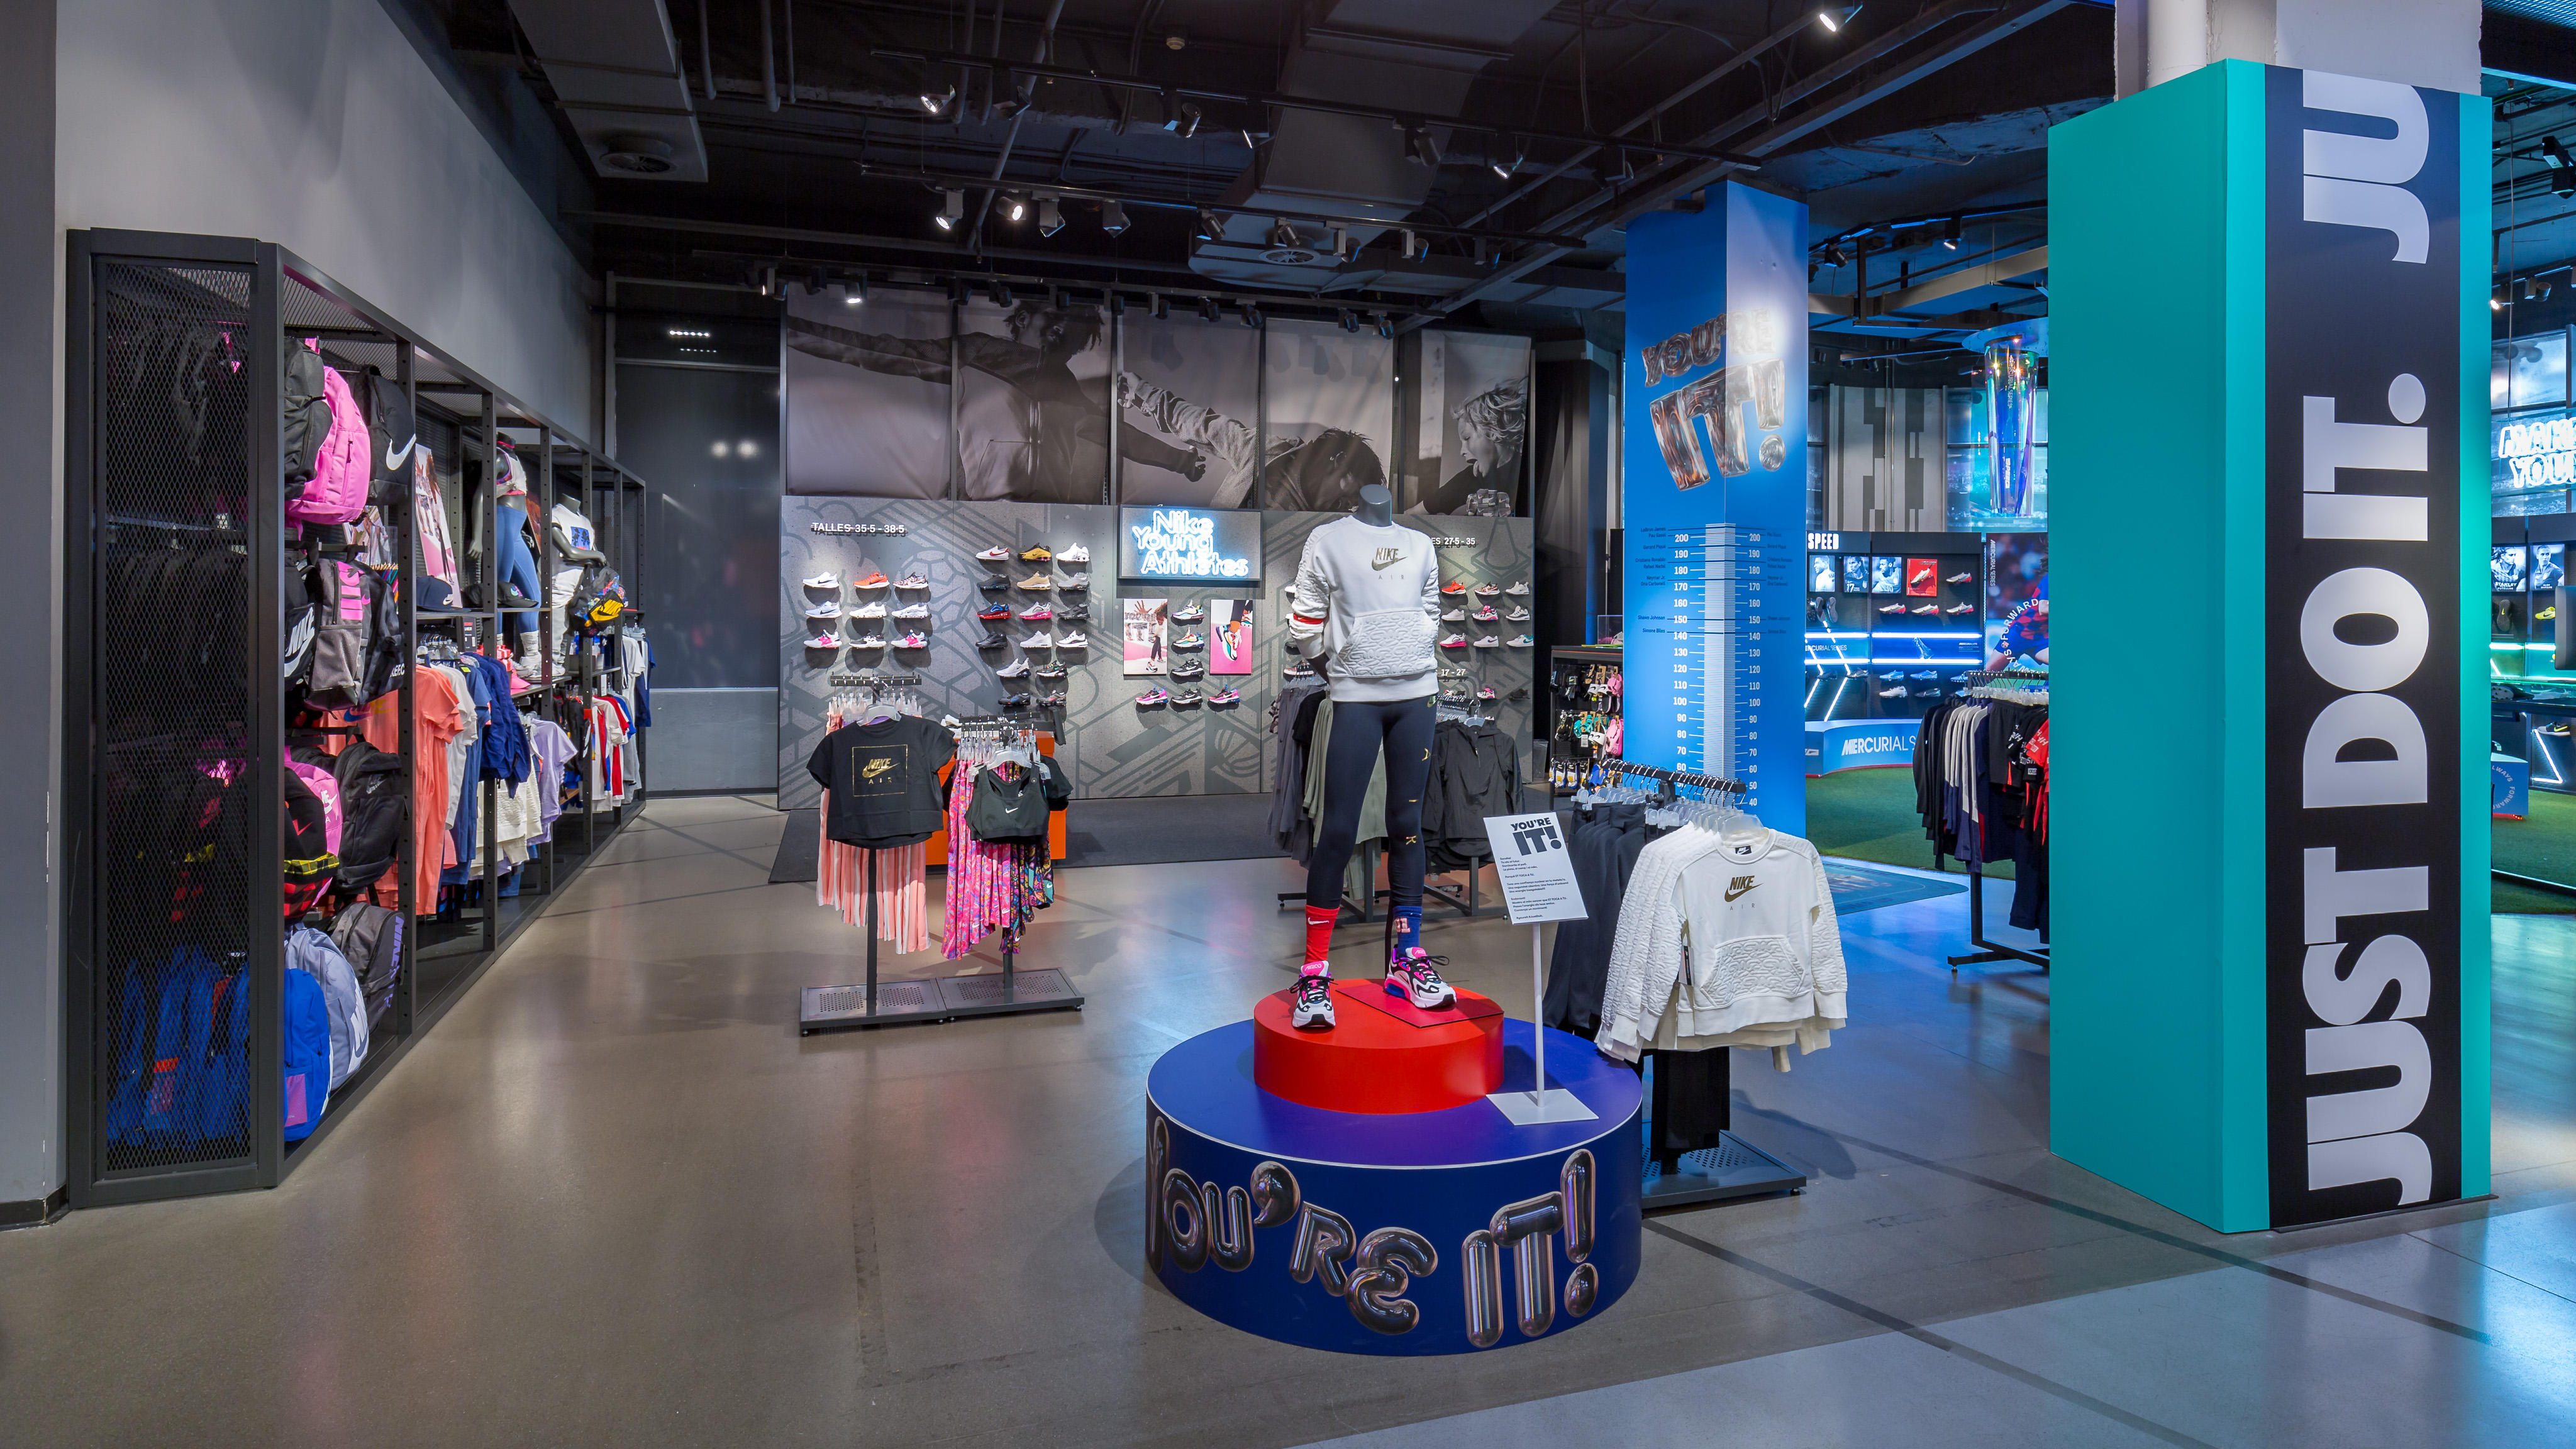 Nike Store Portal de l'Ángel - Deportes Y Ocio: Artículos Y Ropas (Al Menor Y Accesorios) en (dirección, horarios, opiniones, 933041...) - Infobel